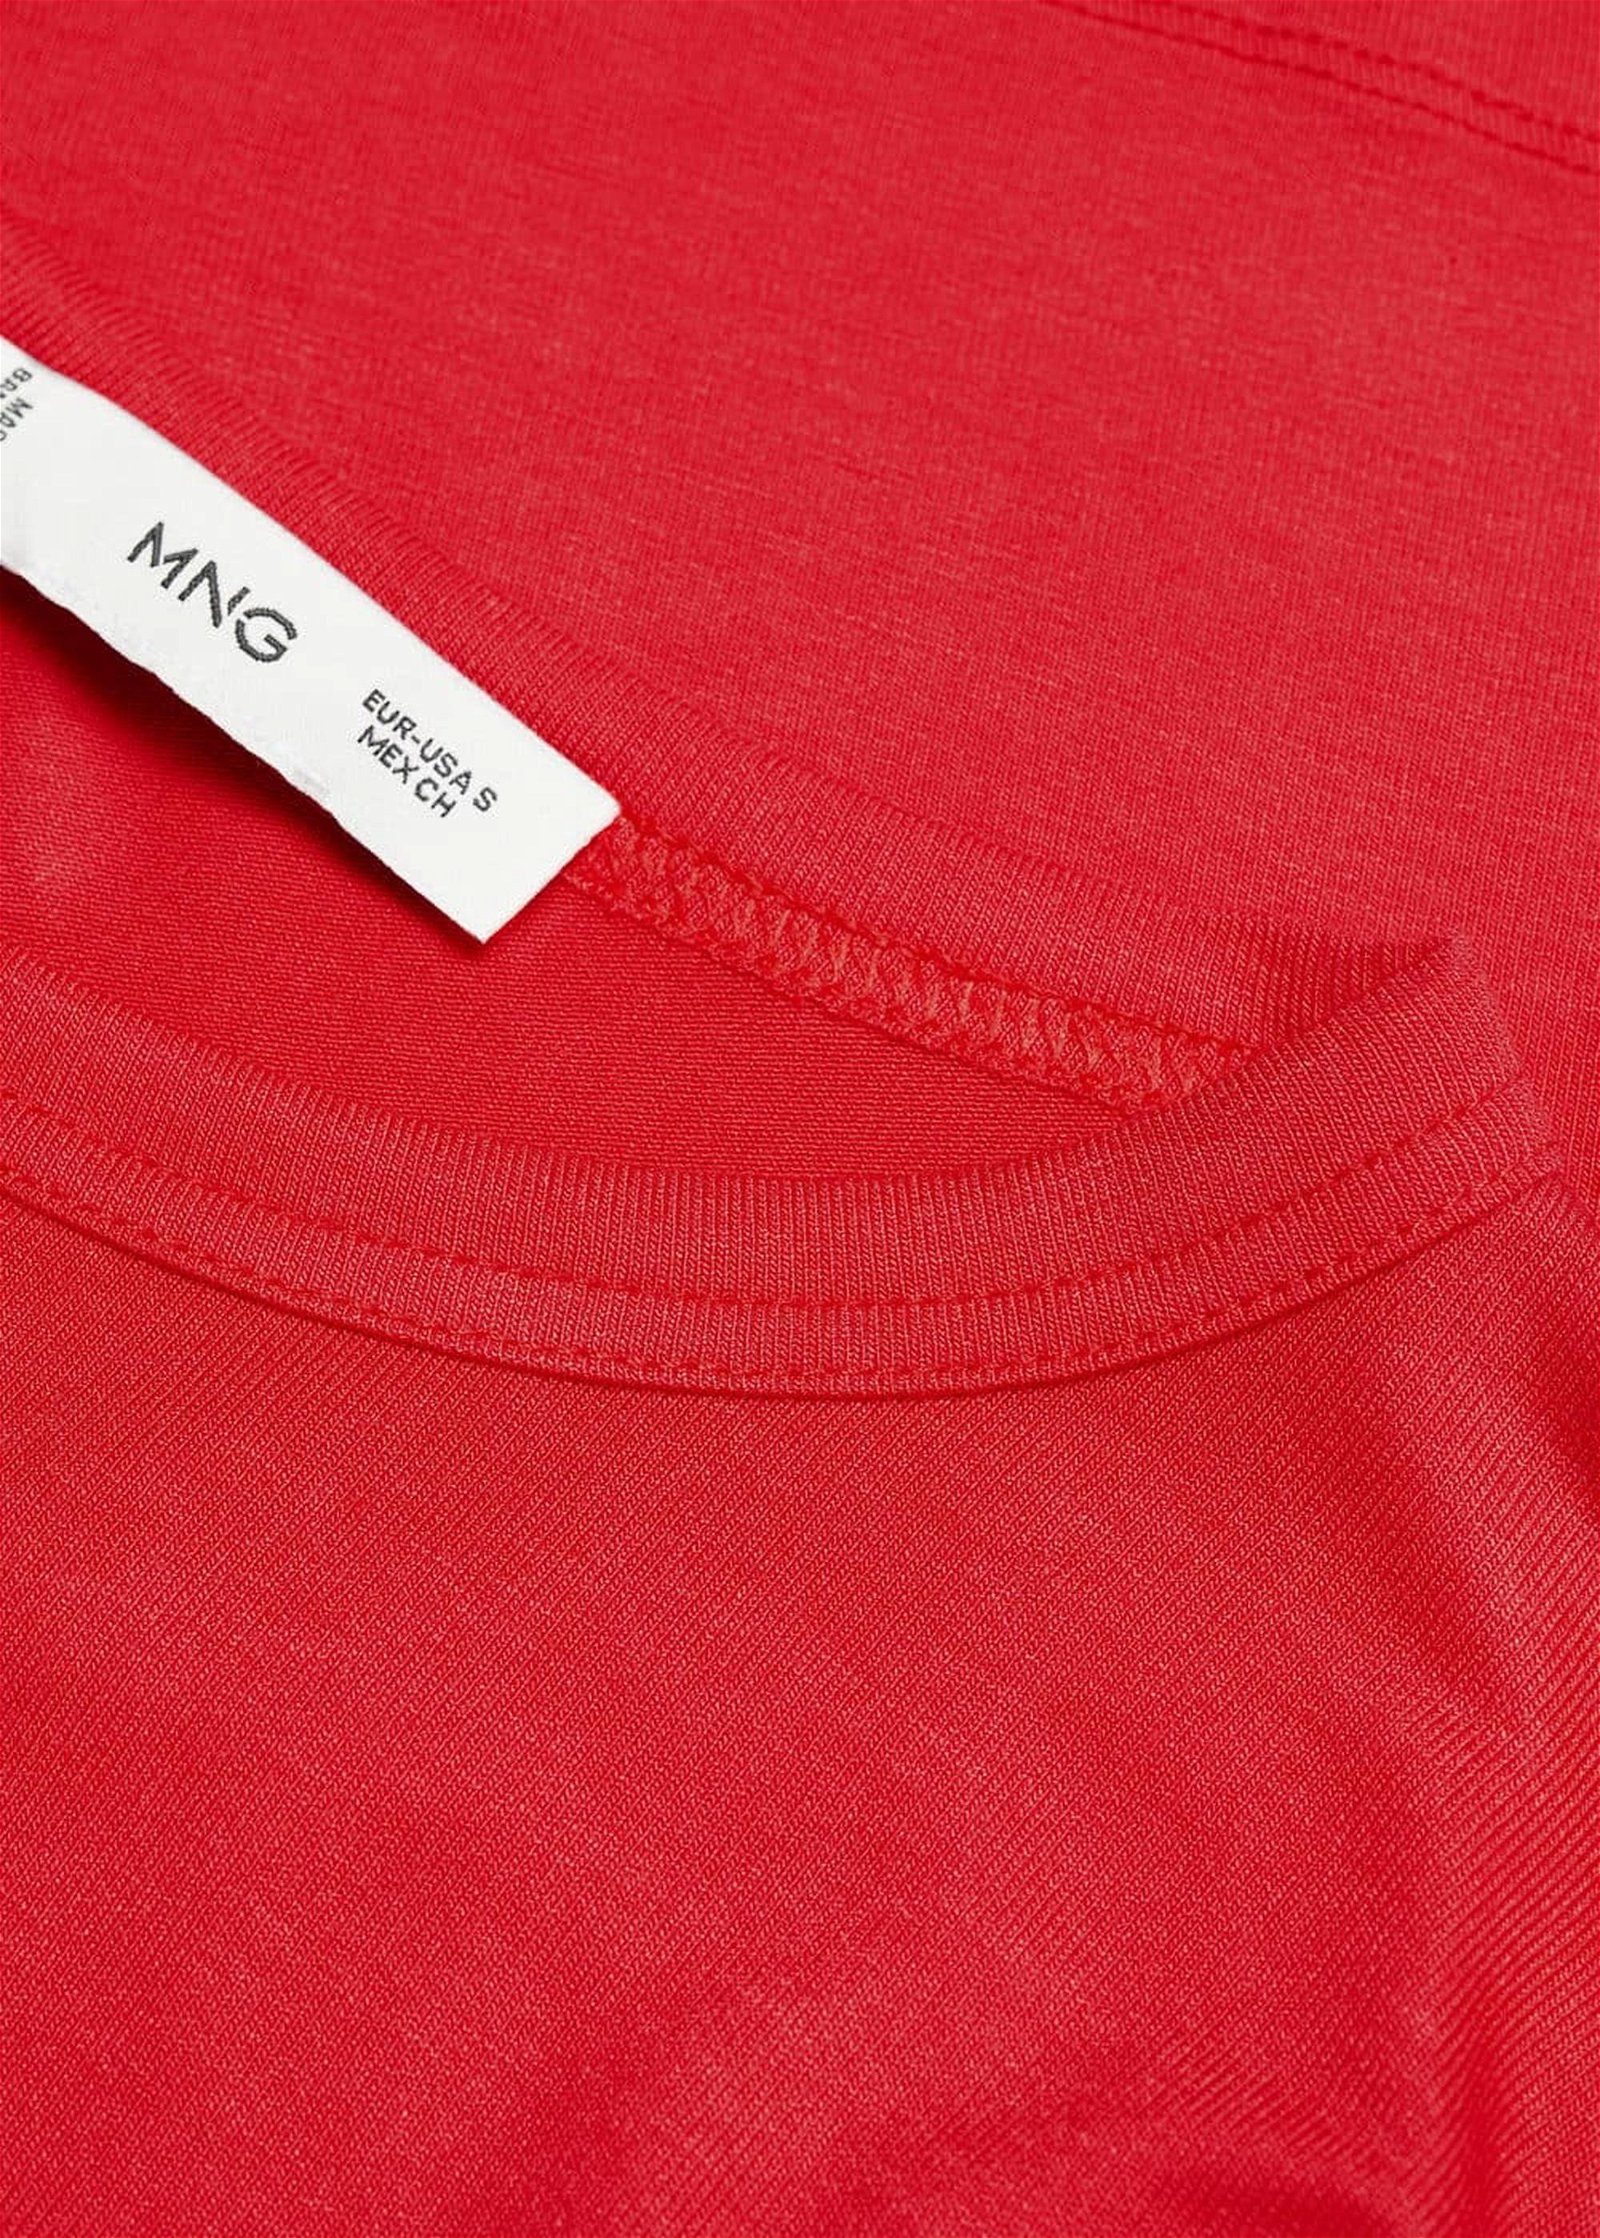 Mango Kadın Baskılı Etekli Sweatshirt Elbise Kirmizi